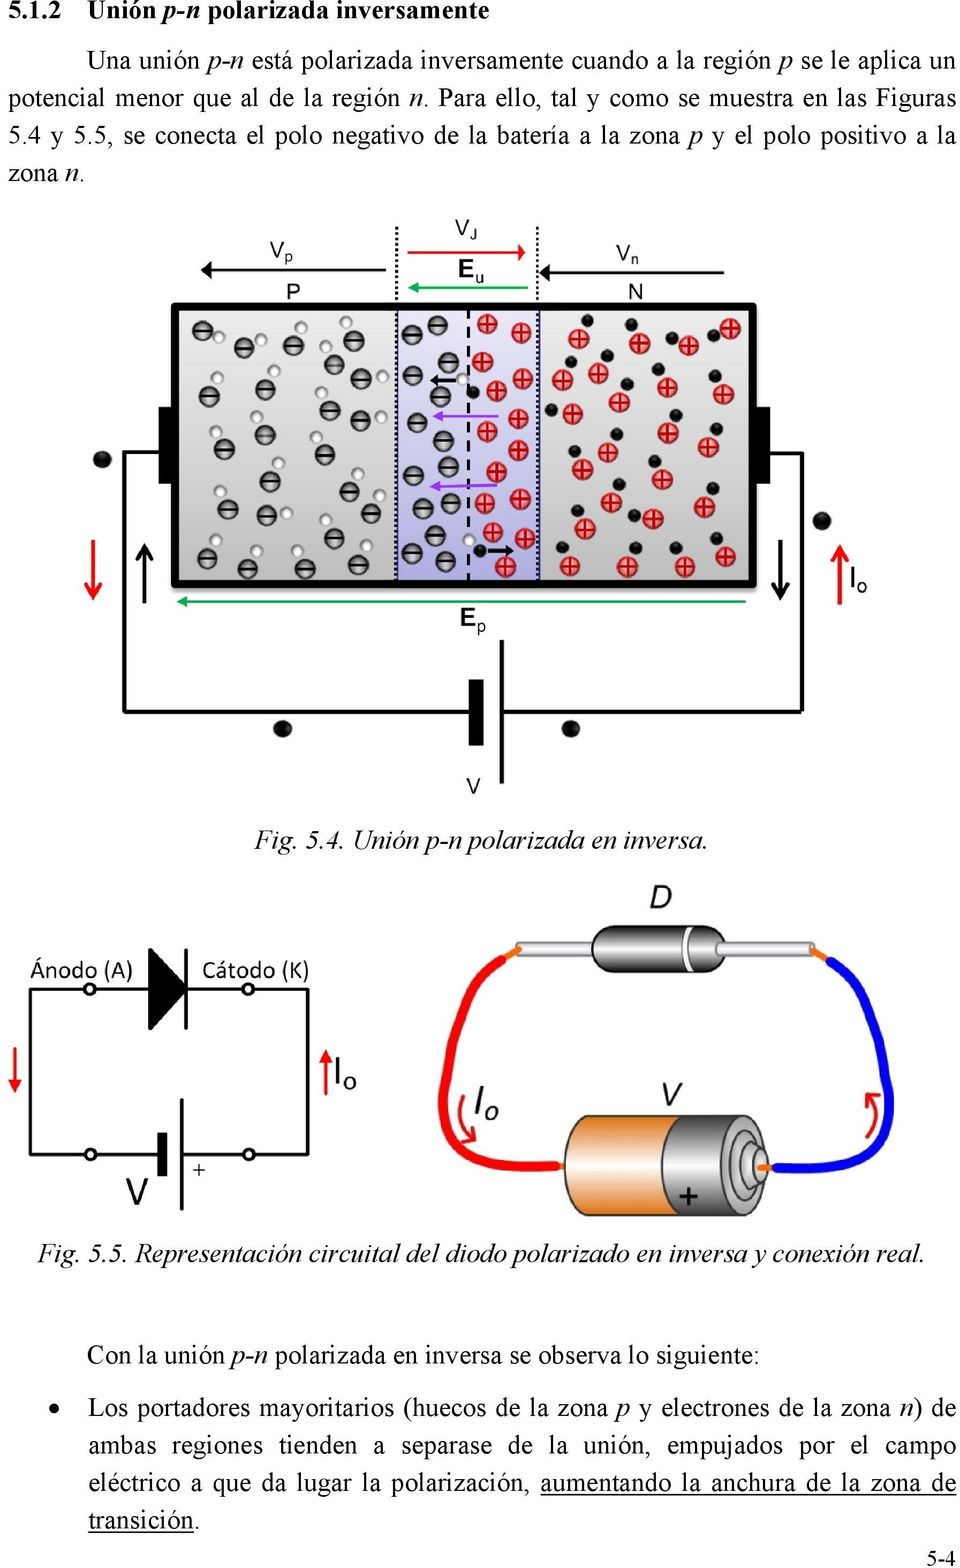 Fig. 5.5. epresentación circuital del diodo polarizado en inversa y conexión real.